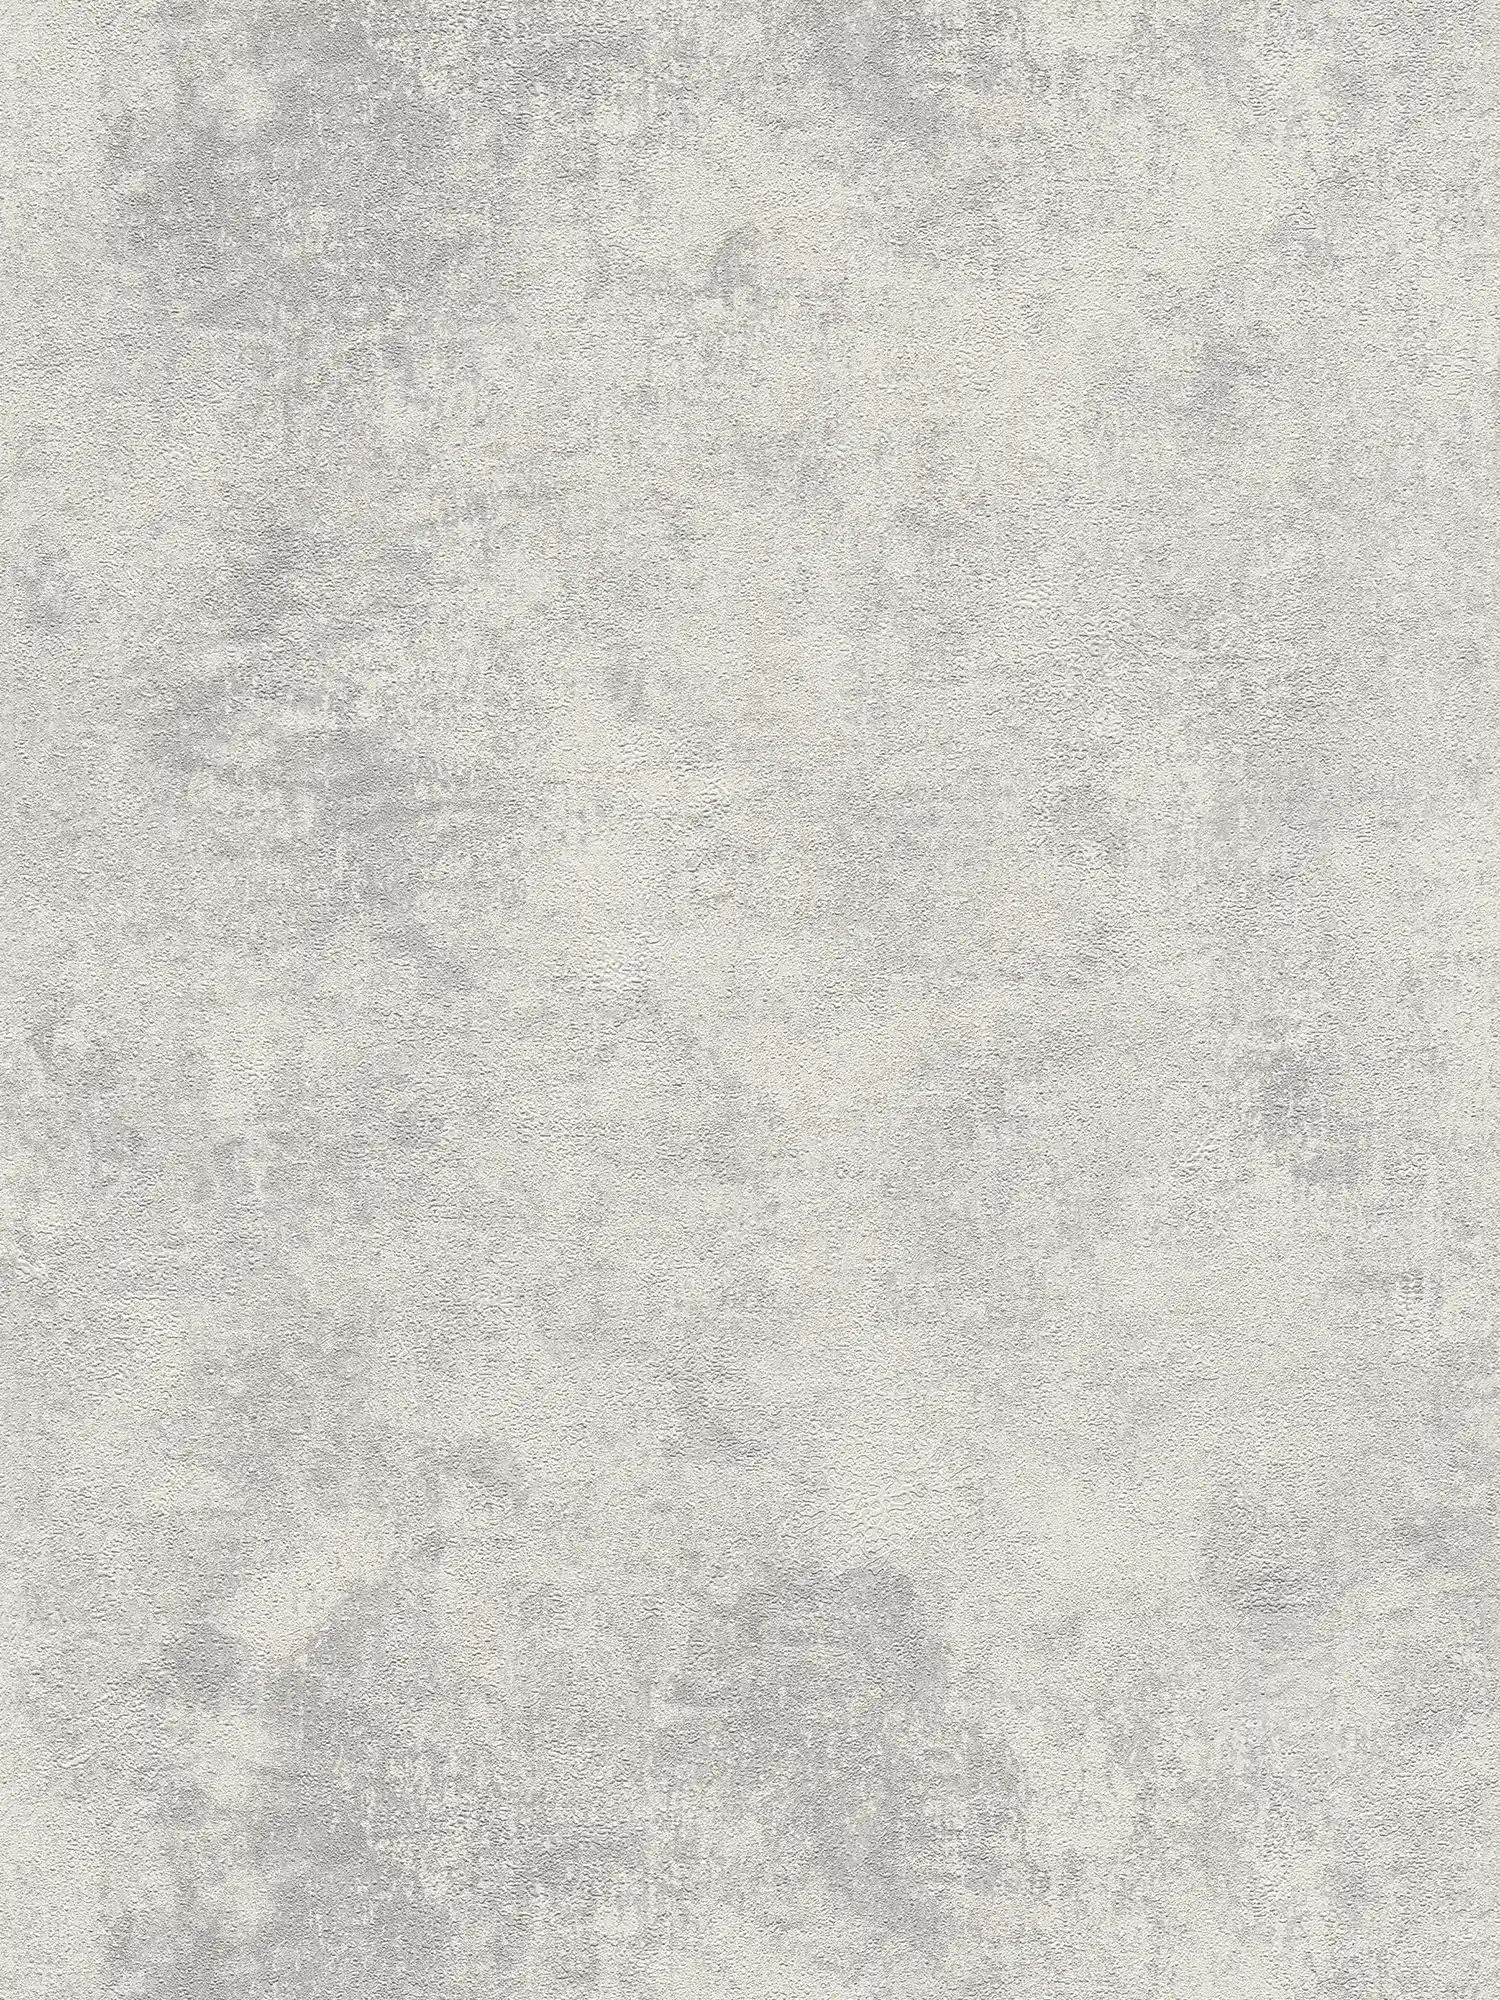 Carte da parati in tessuto non tessuto con aspetto di intonaco a disco e motivo strutturato - grigio, argento
